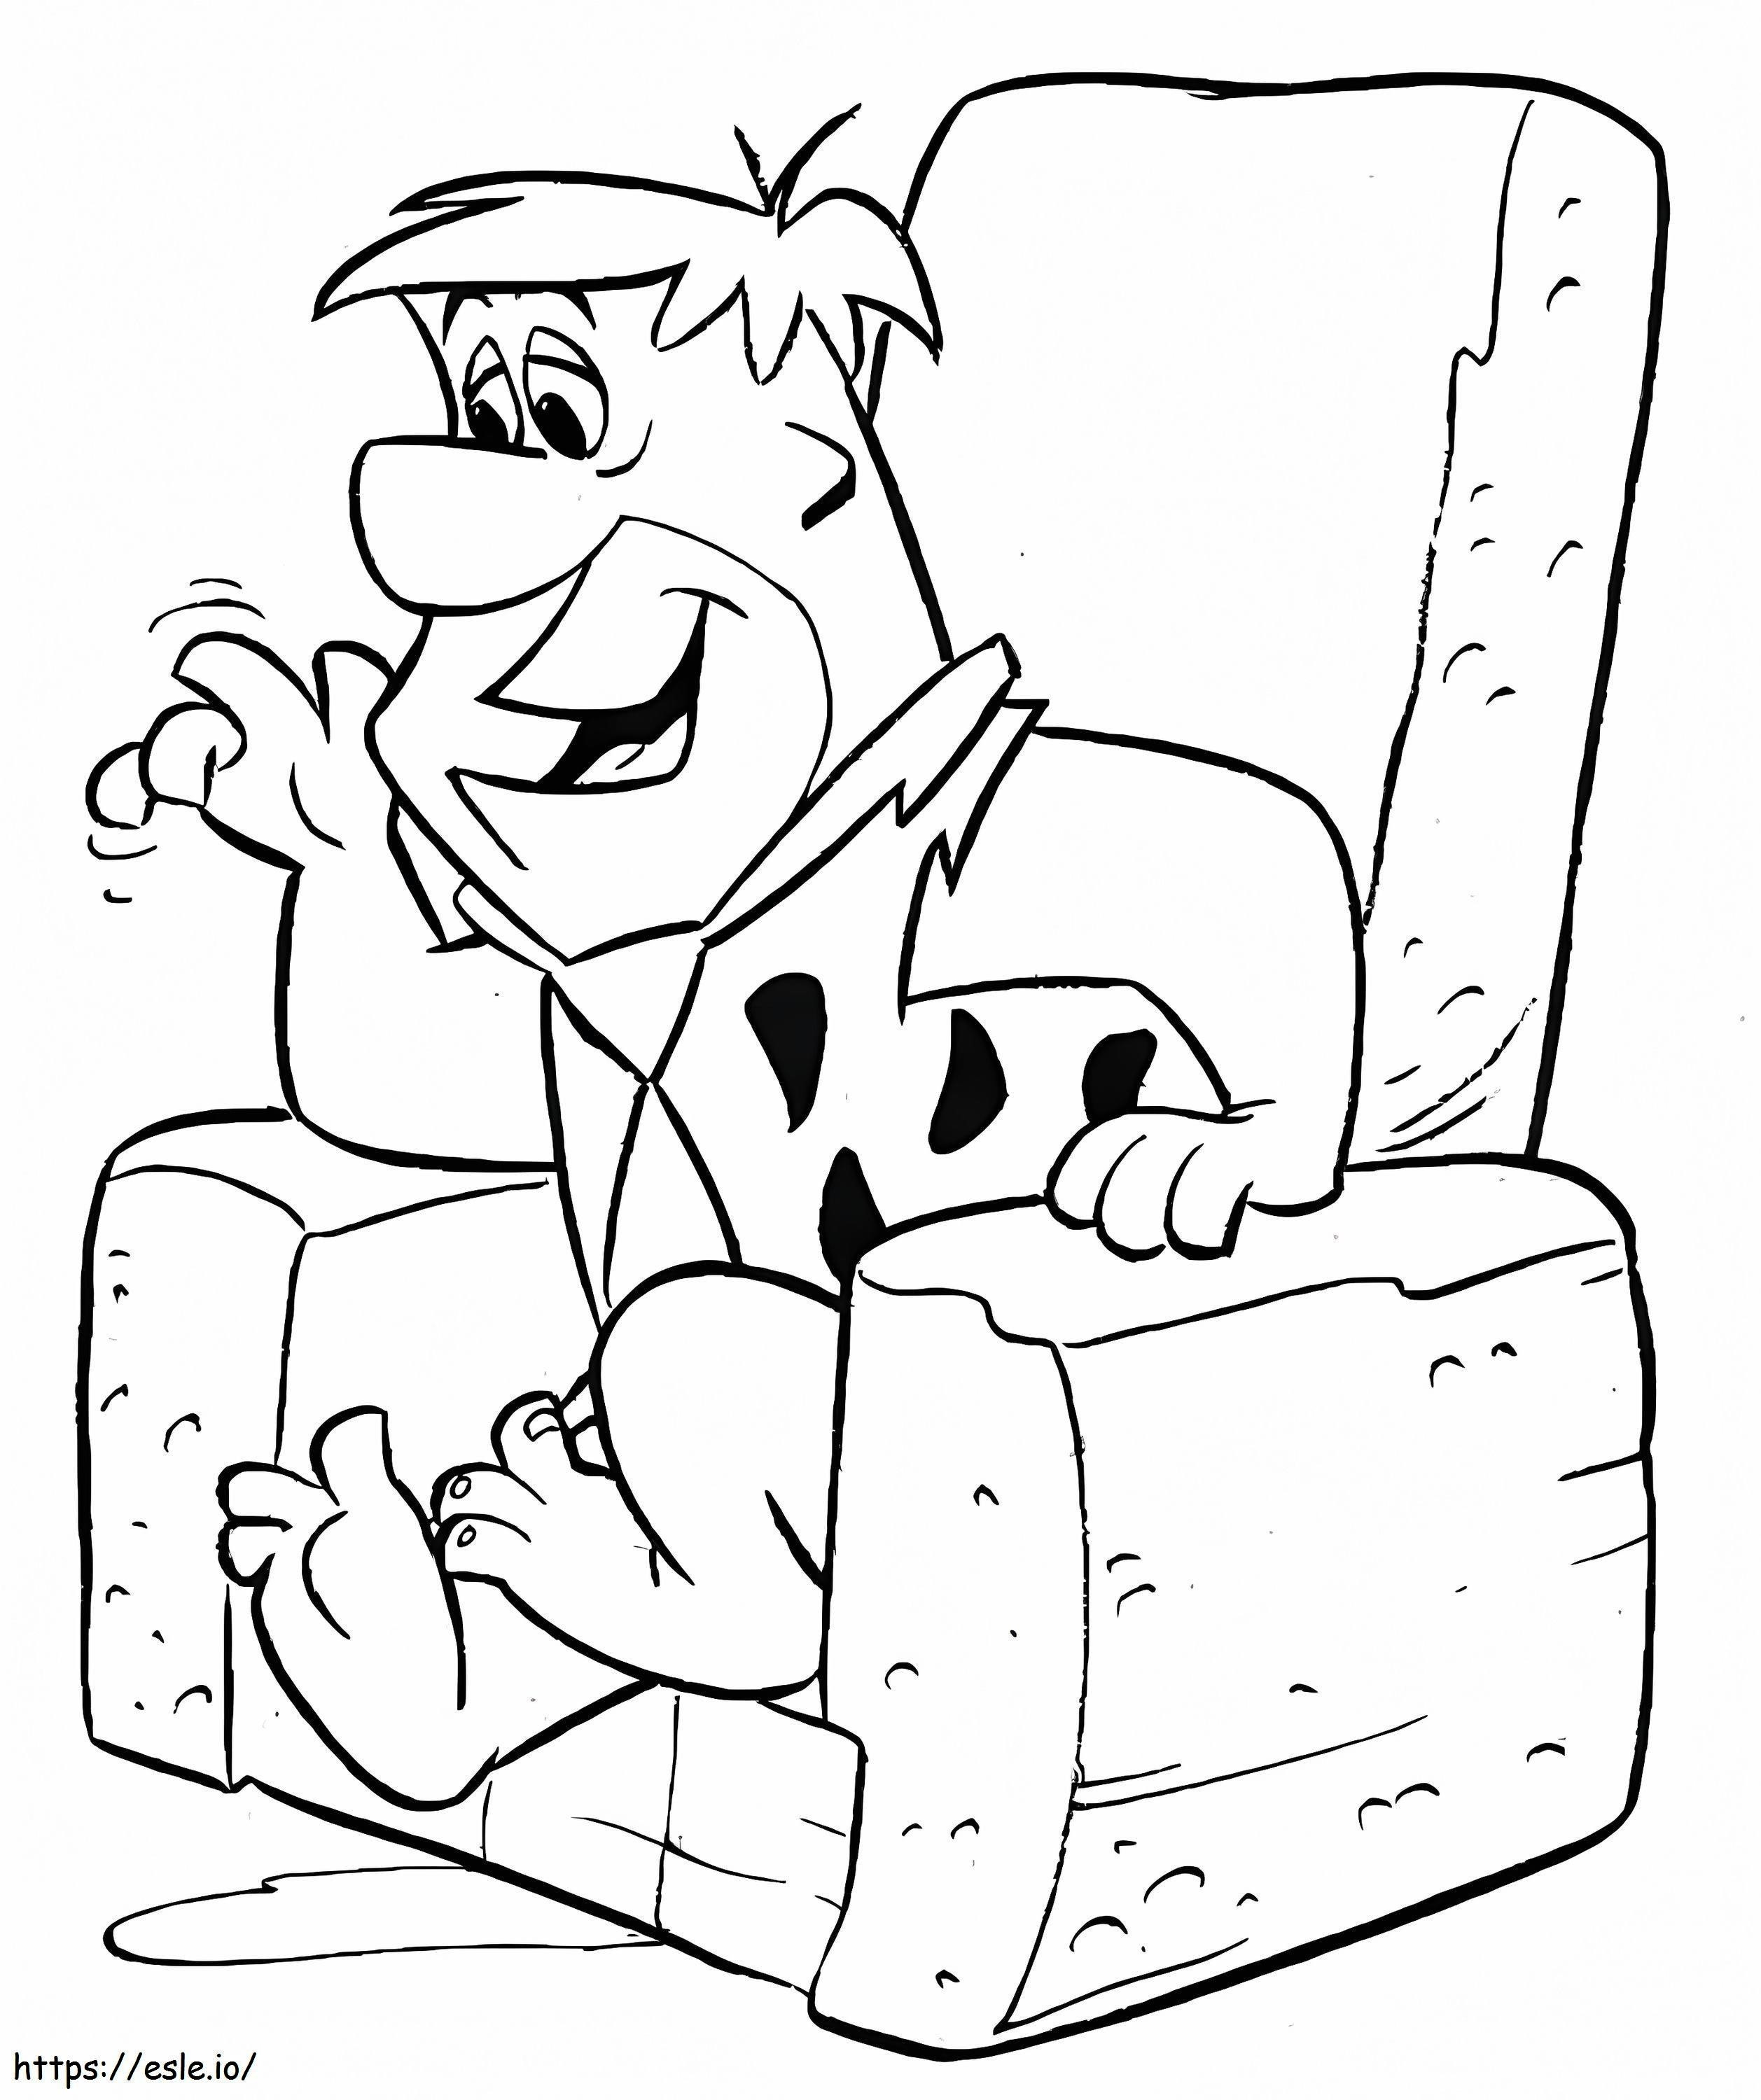 Fred Flintstone sentado em uma cadeira para colorir